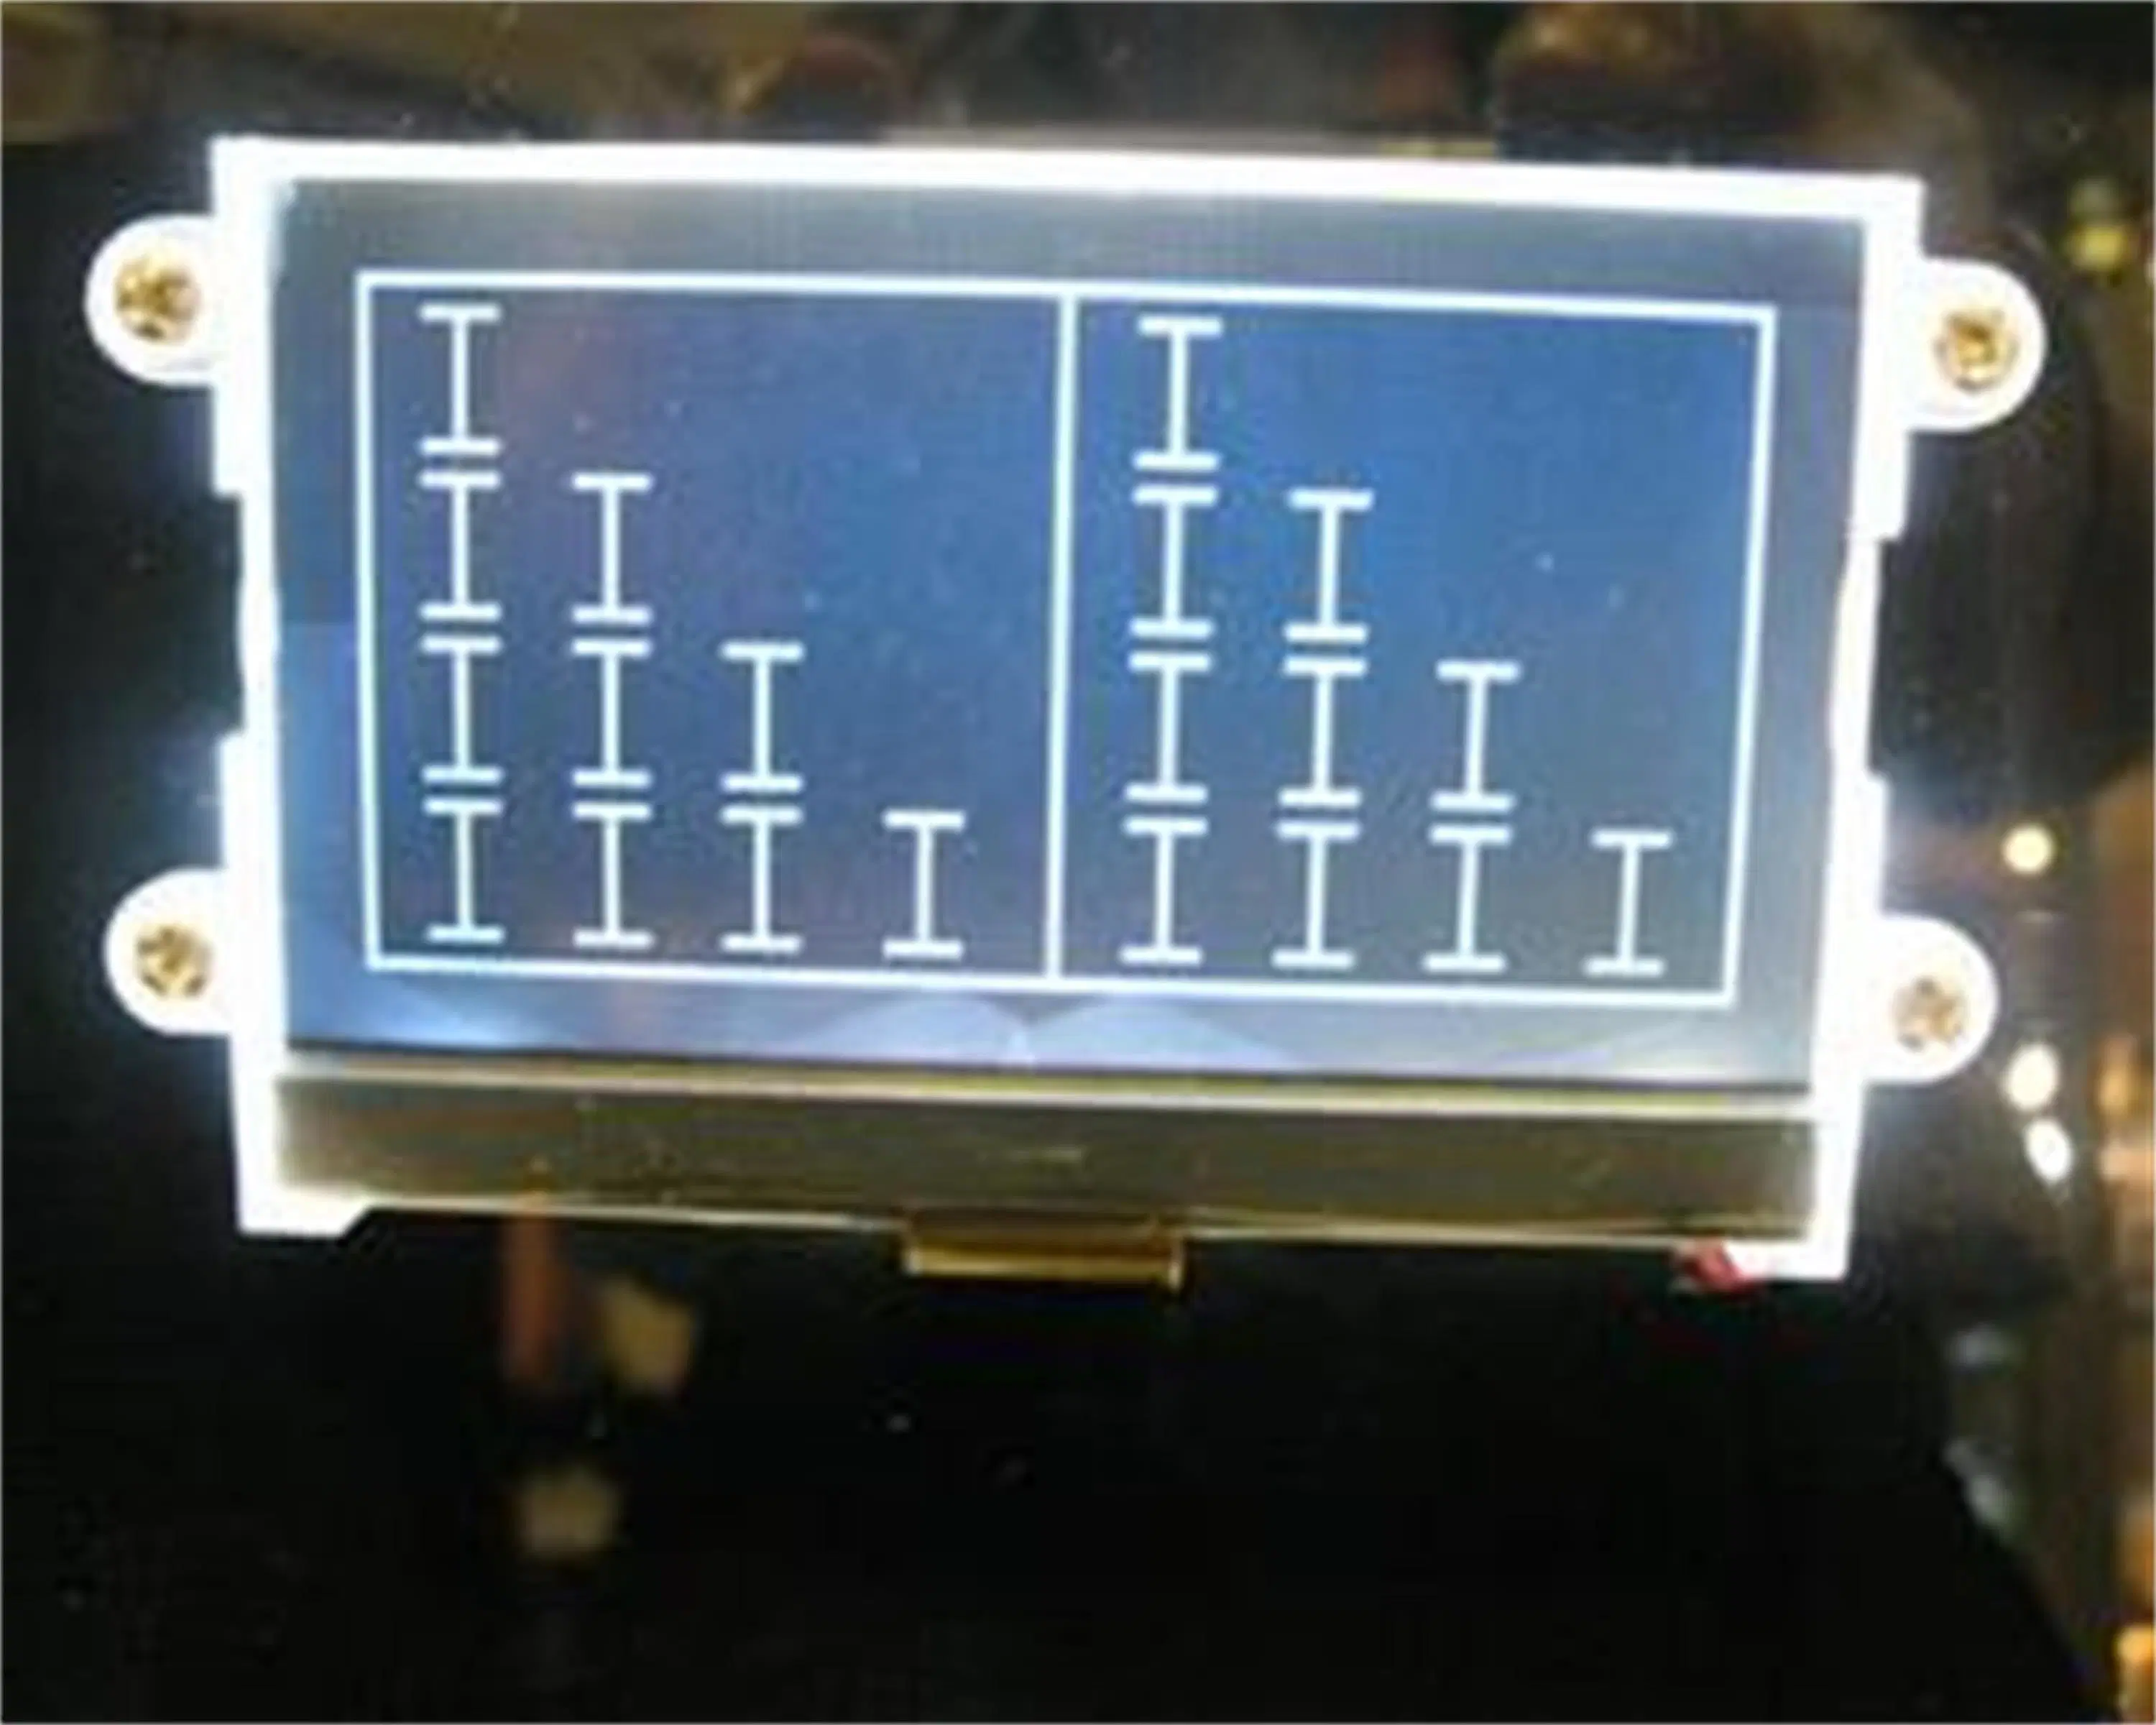 شاشة عرض LCD رقمية رسومية بالأبيض والأسود مع وحدة التحكم ST7920